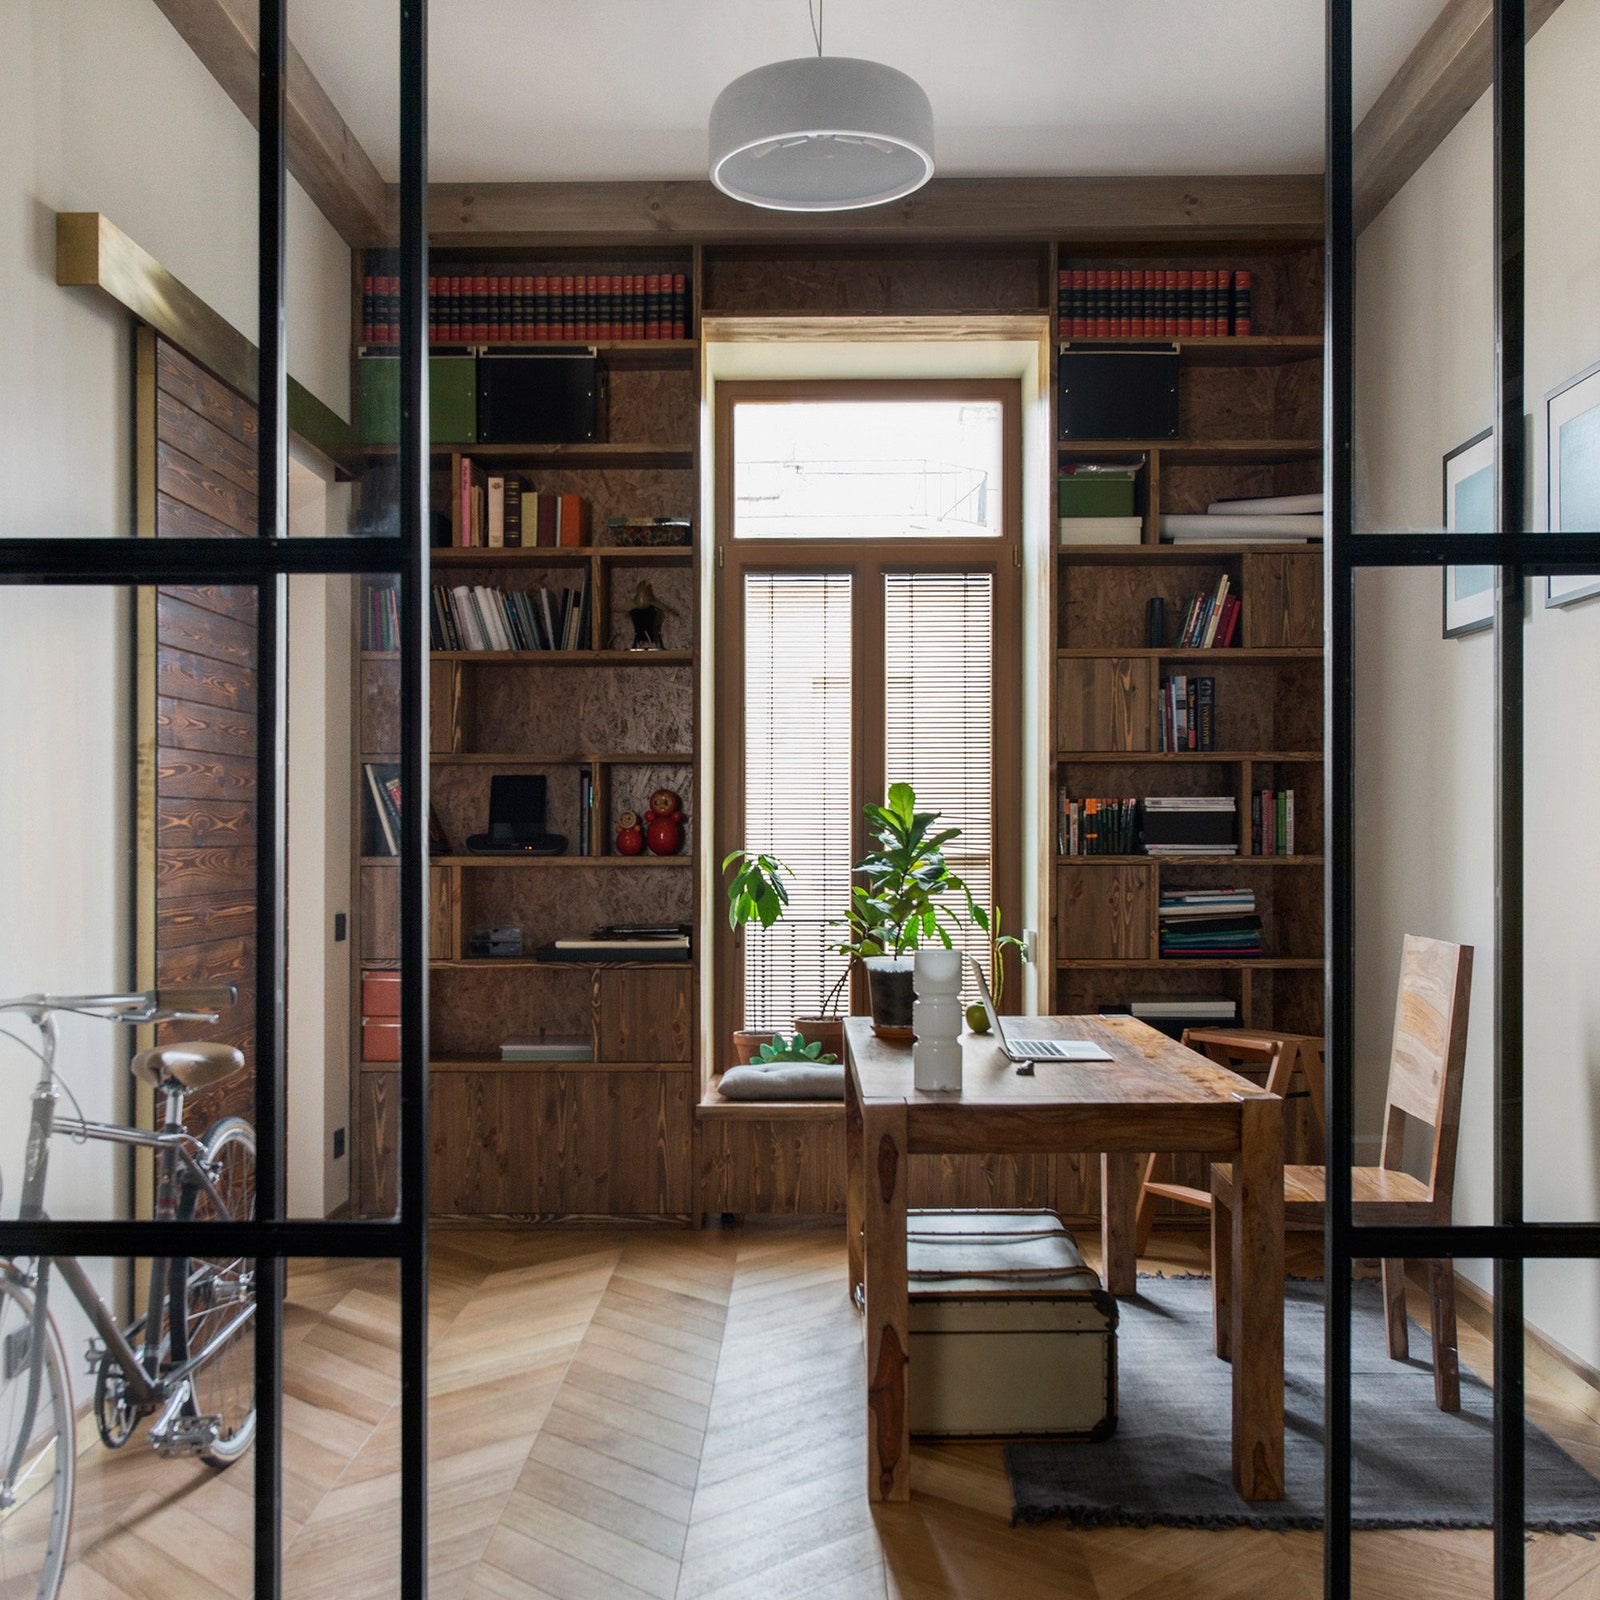 Круговая планировка в квартире 6 полезных примеров от дизайнеров